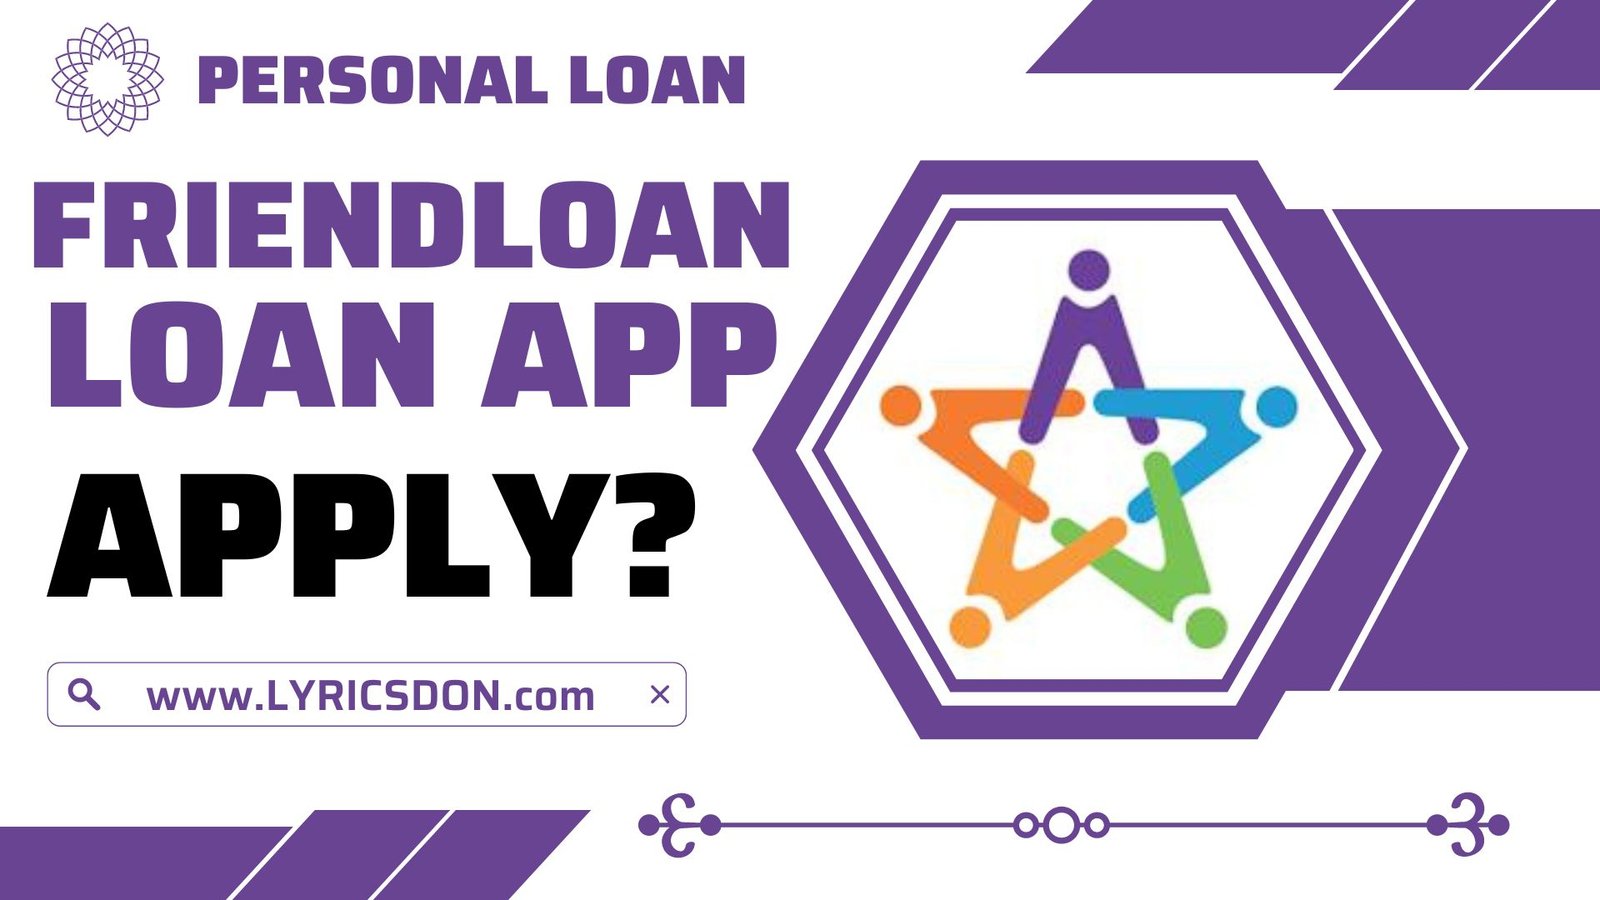 FriendLoan App से लोन कैसे लें?